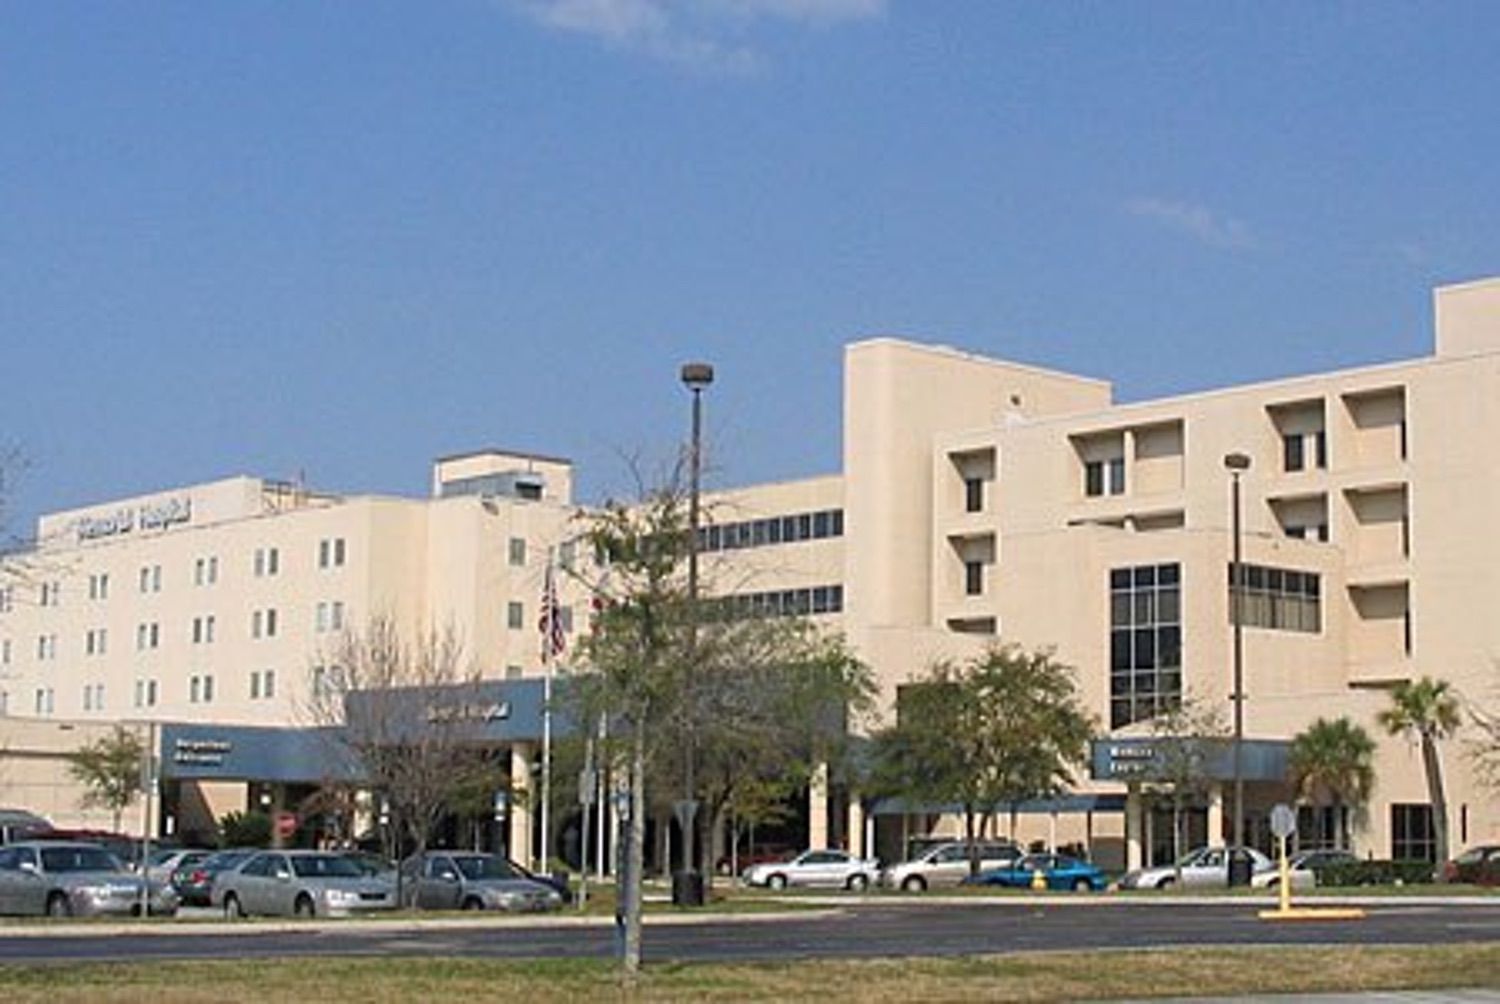 Express Care Memorial Hospital